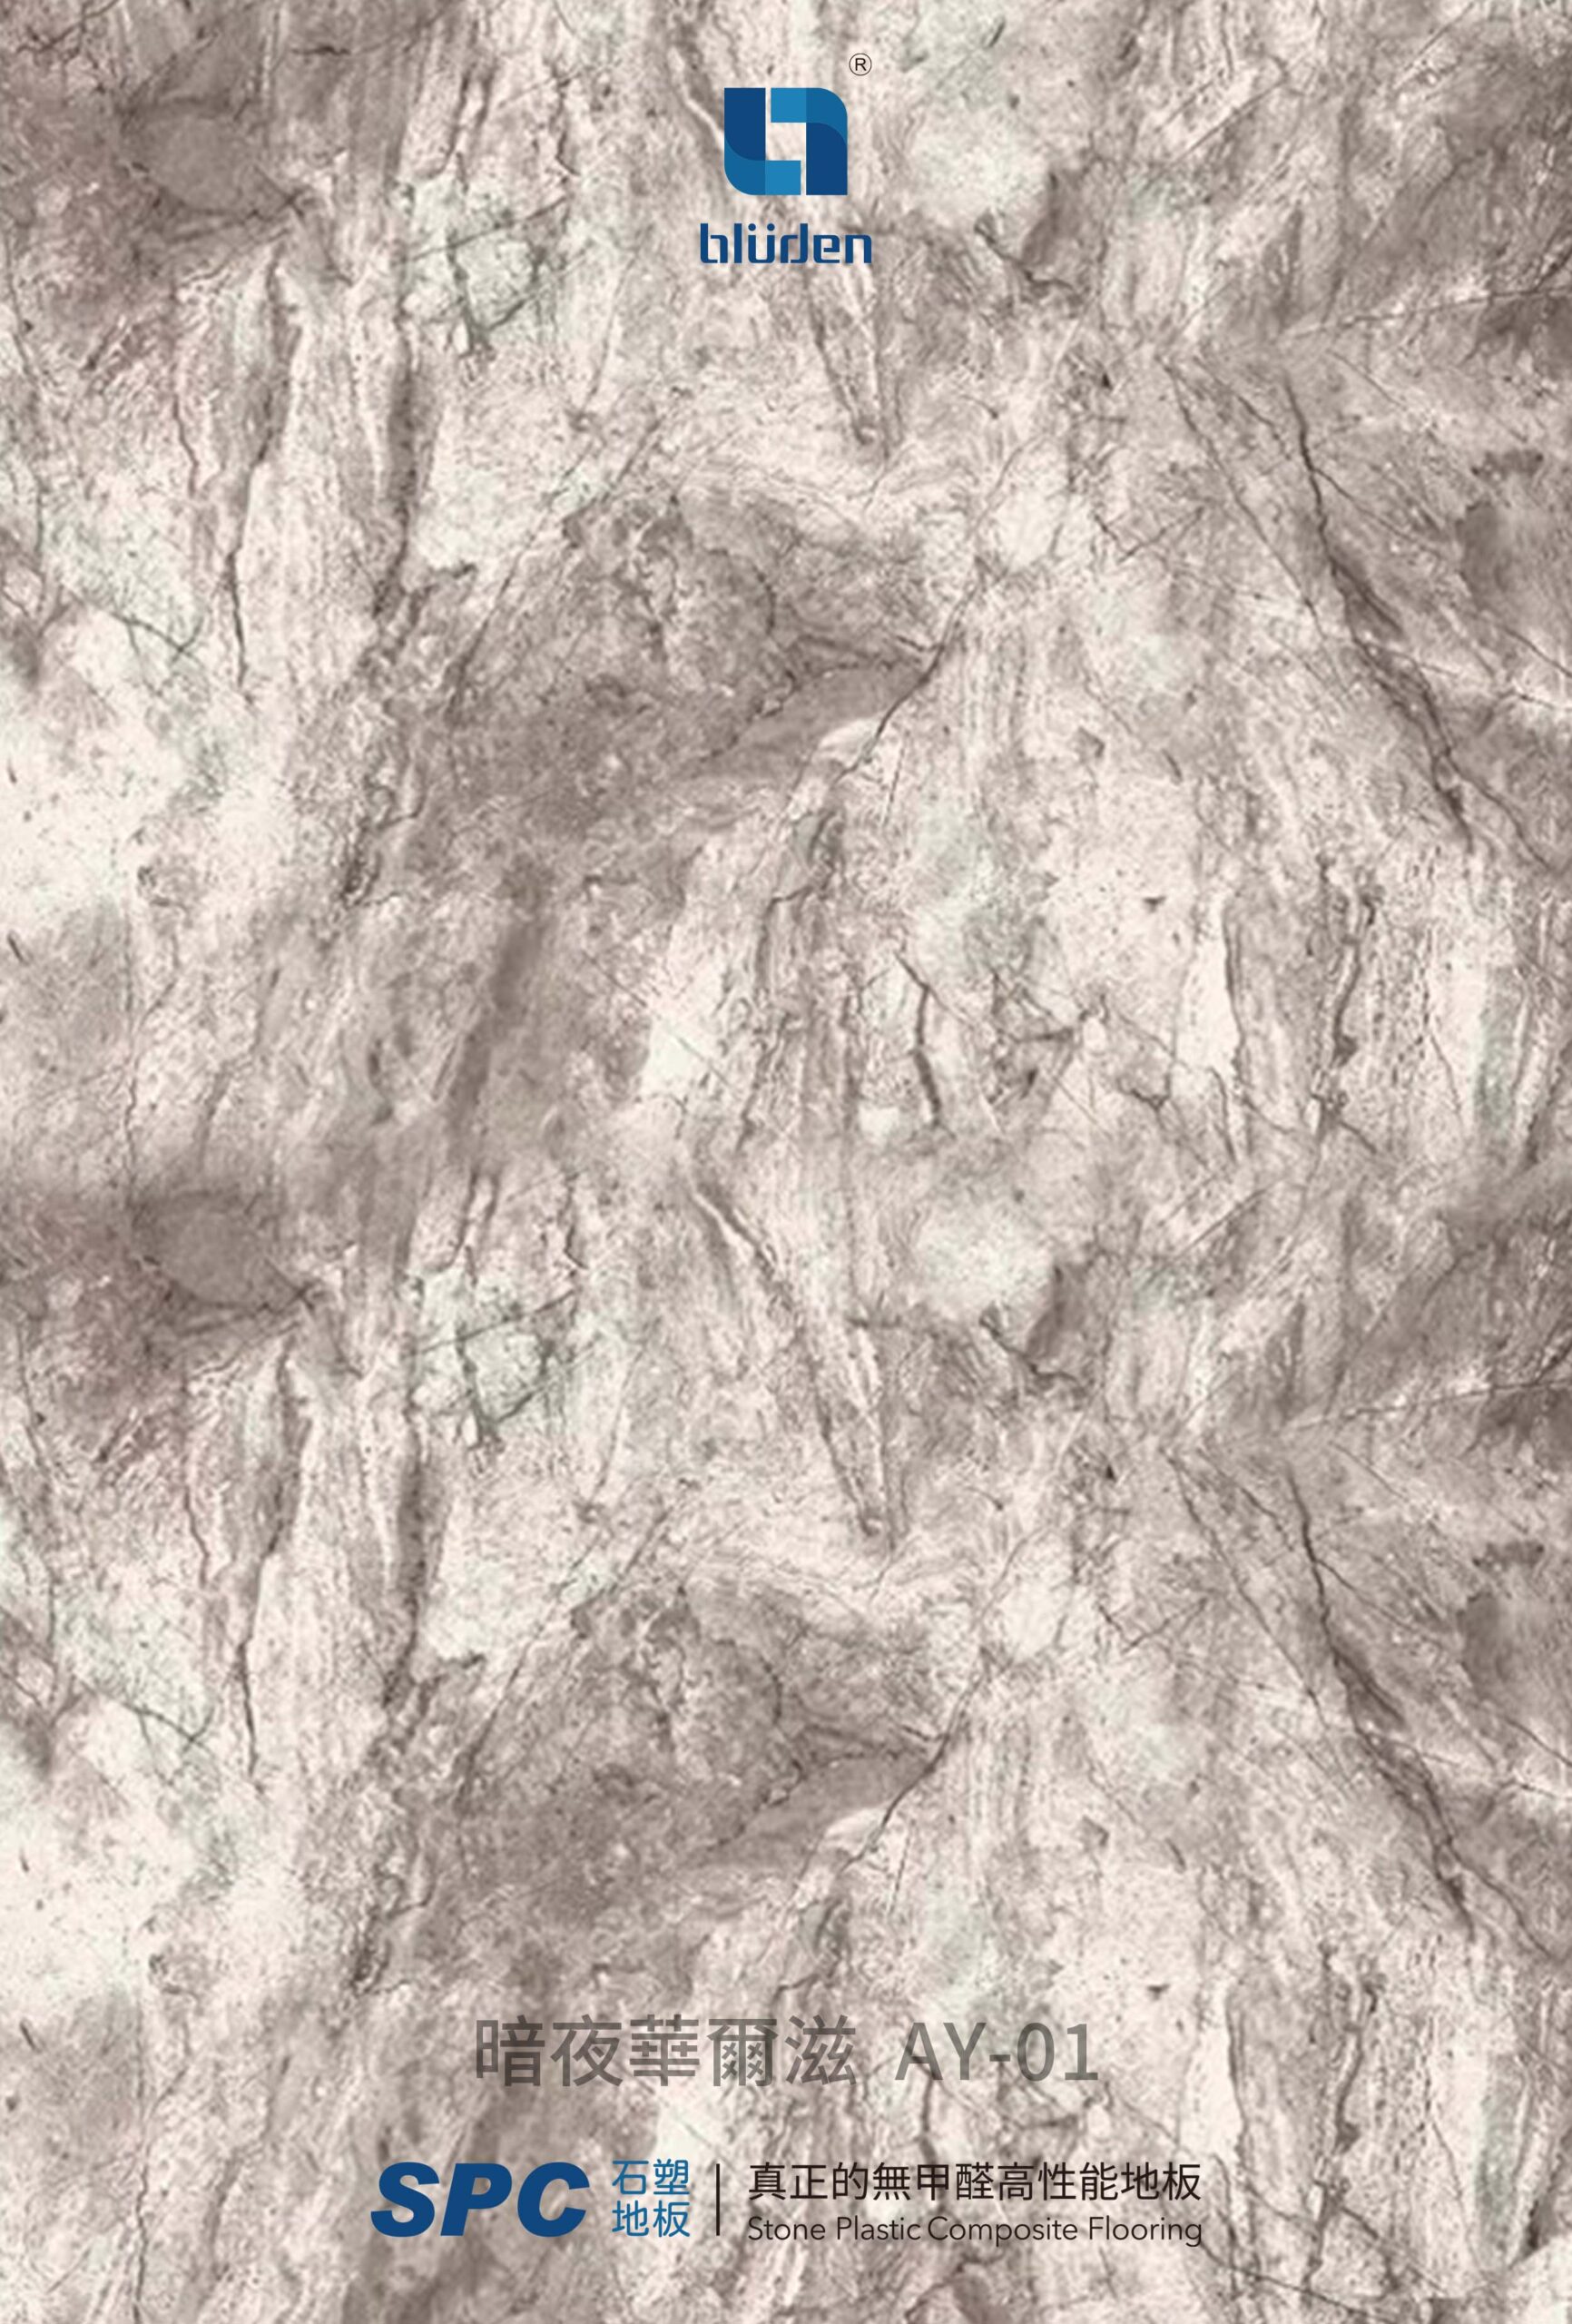 SPC石塑地板-暗夜華爾滋-AY-01-浮水印-1